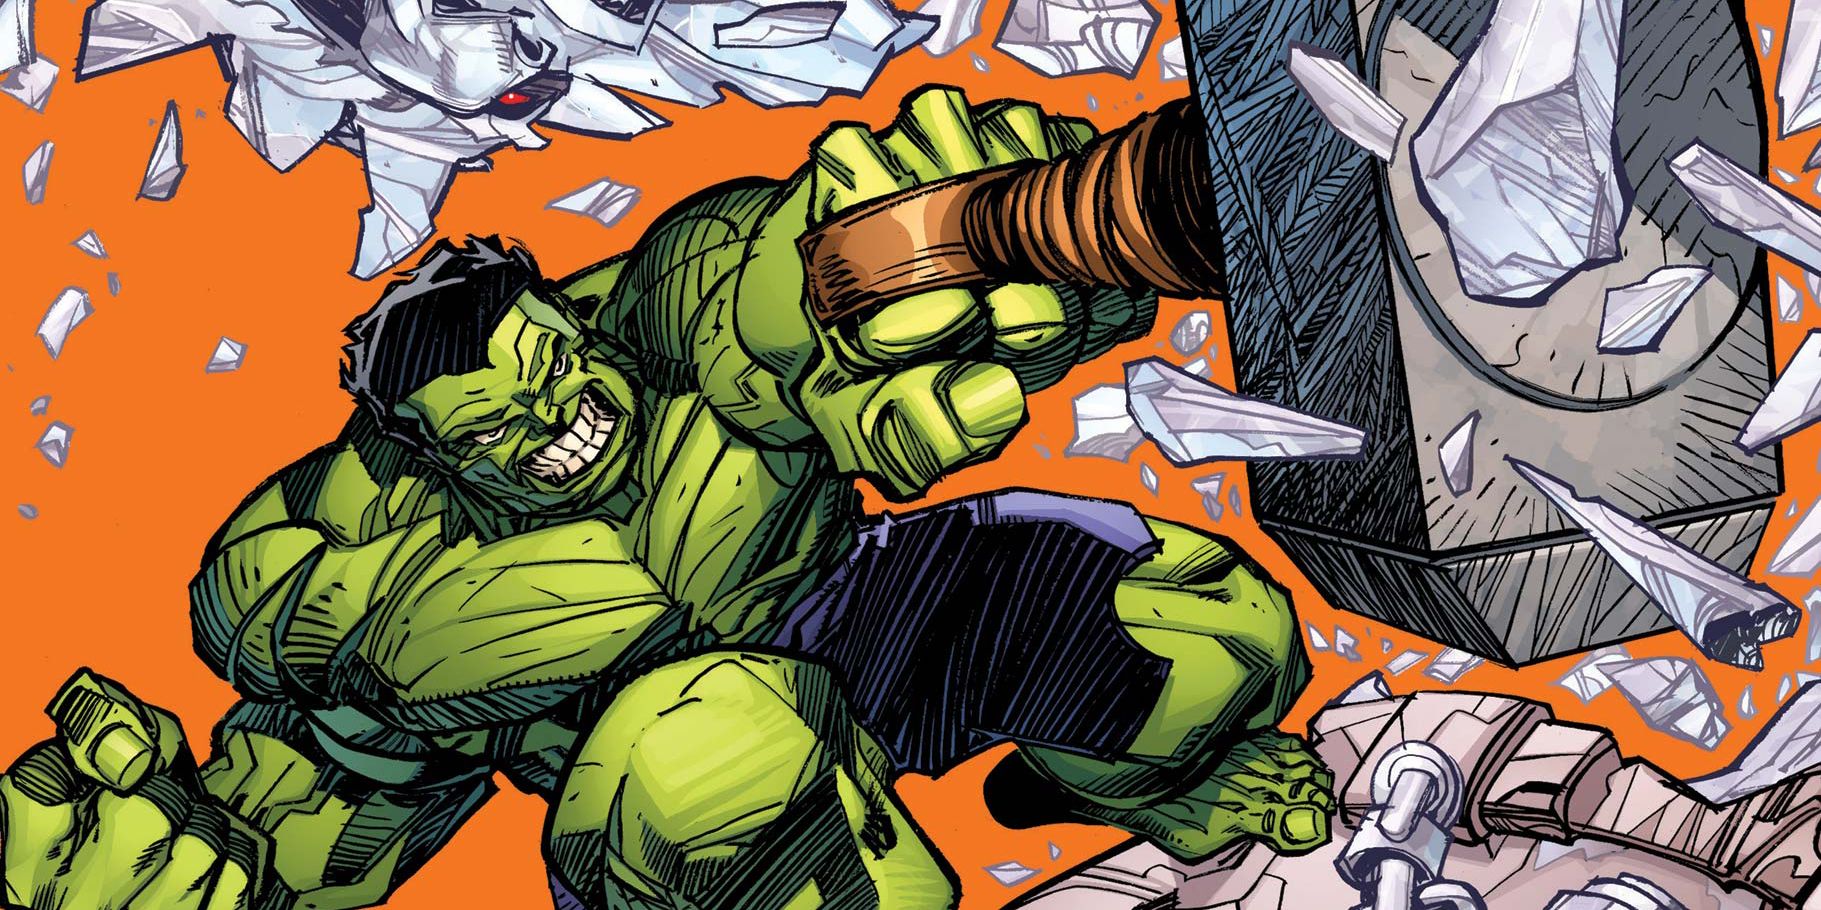 Hulk throwing Thor's hammer